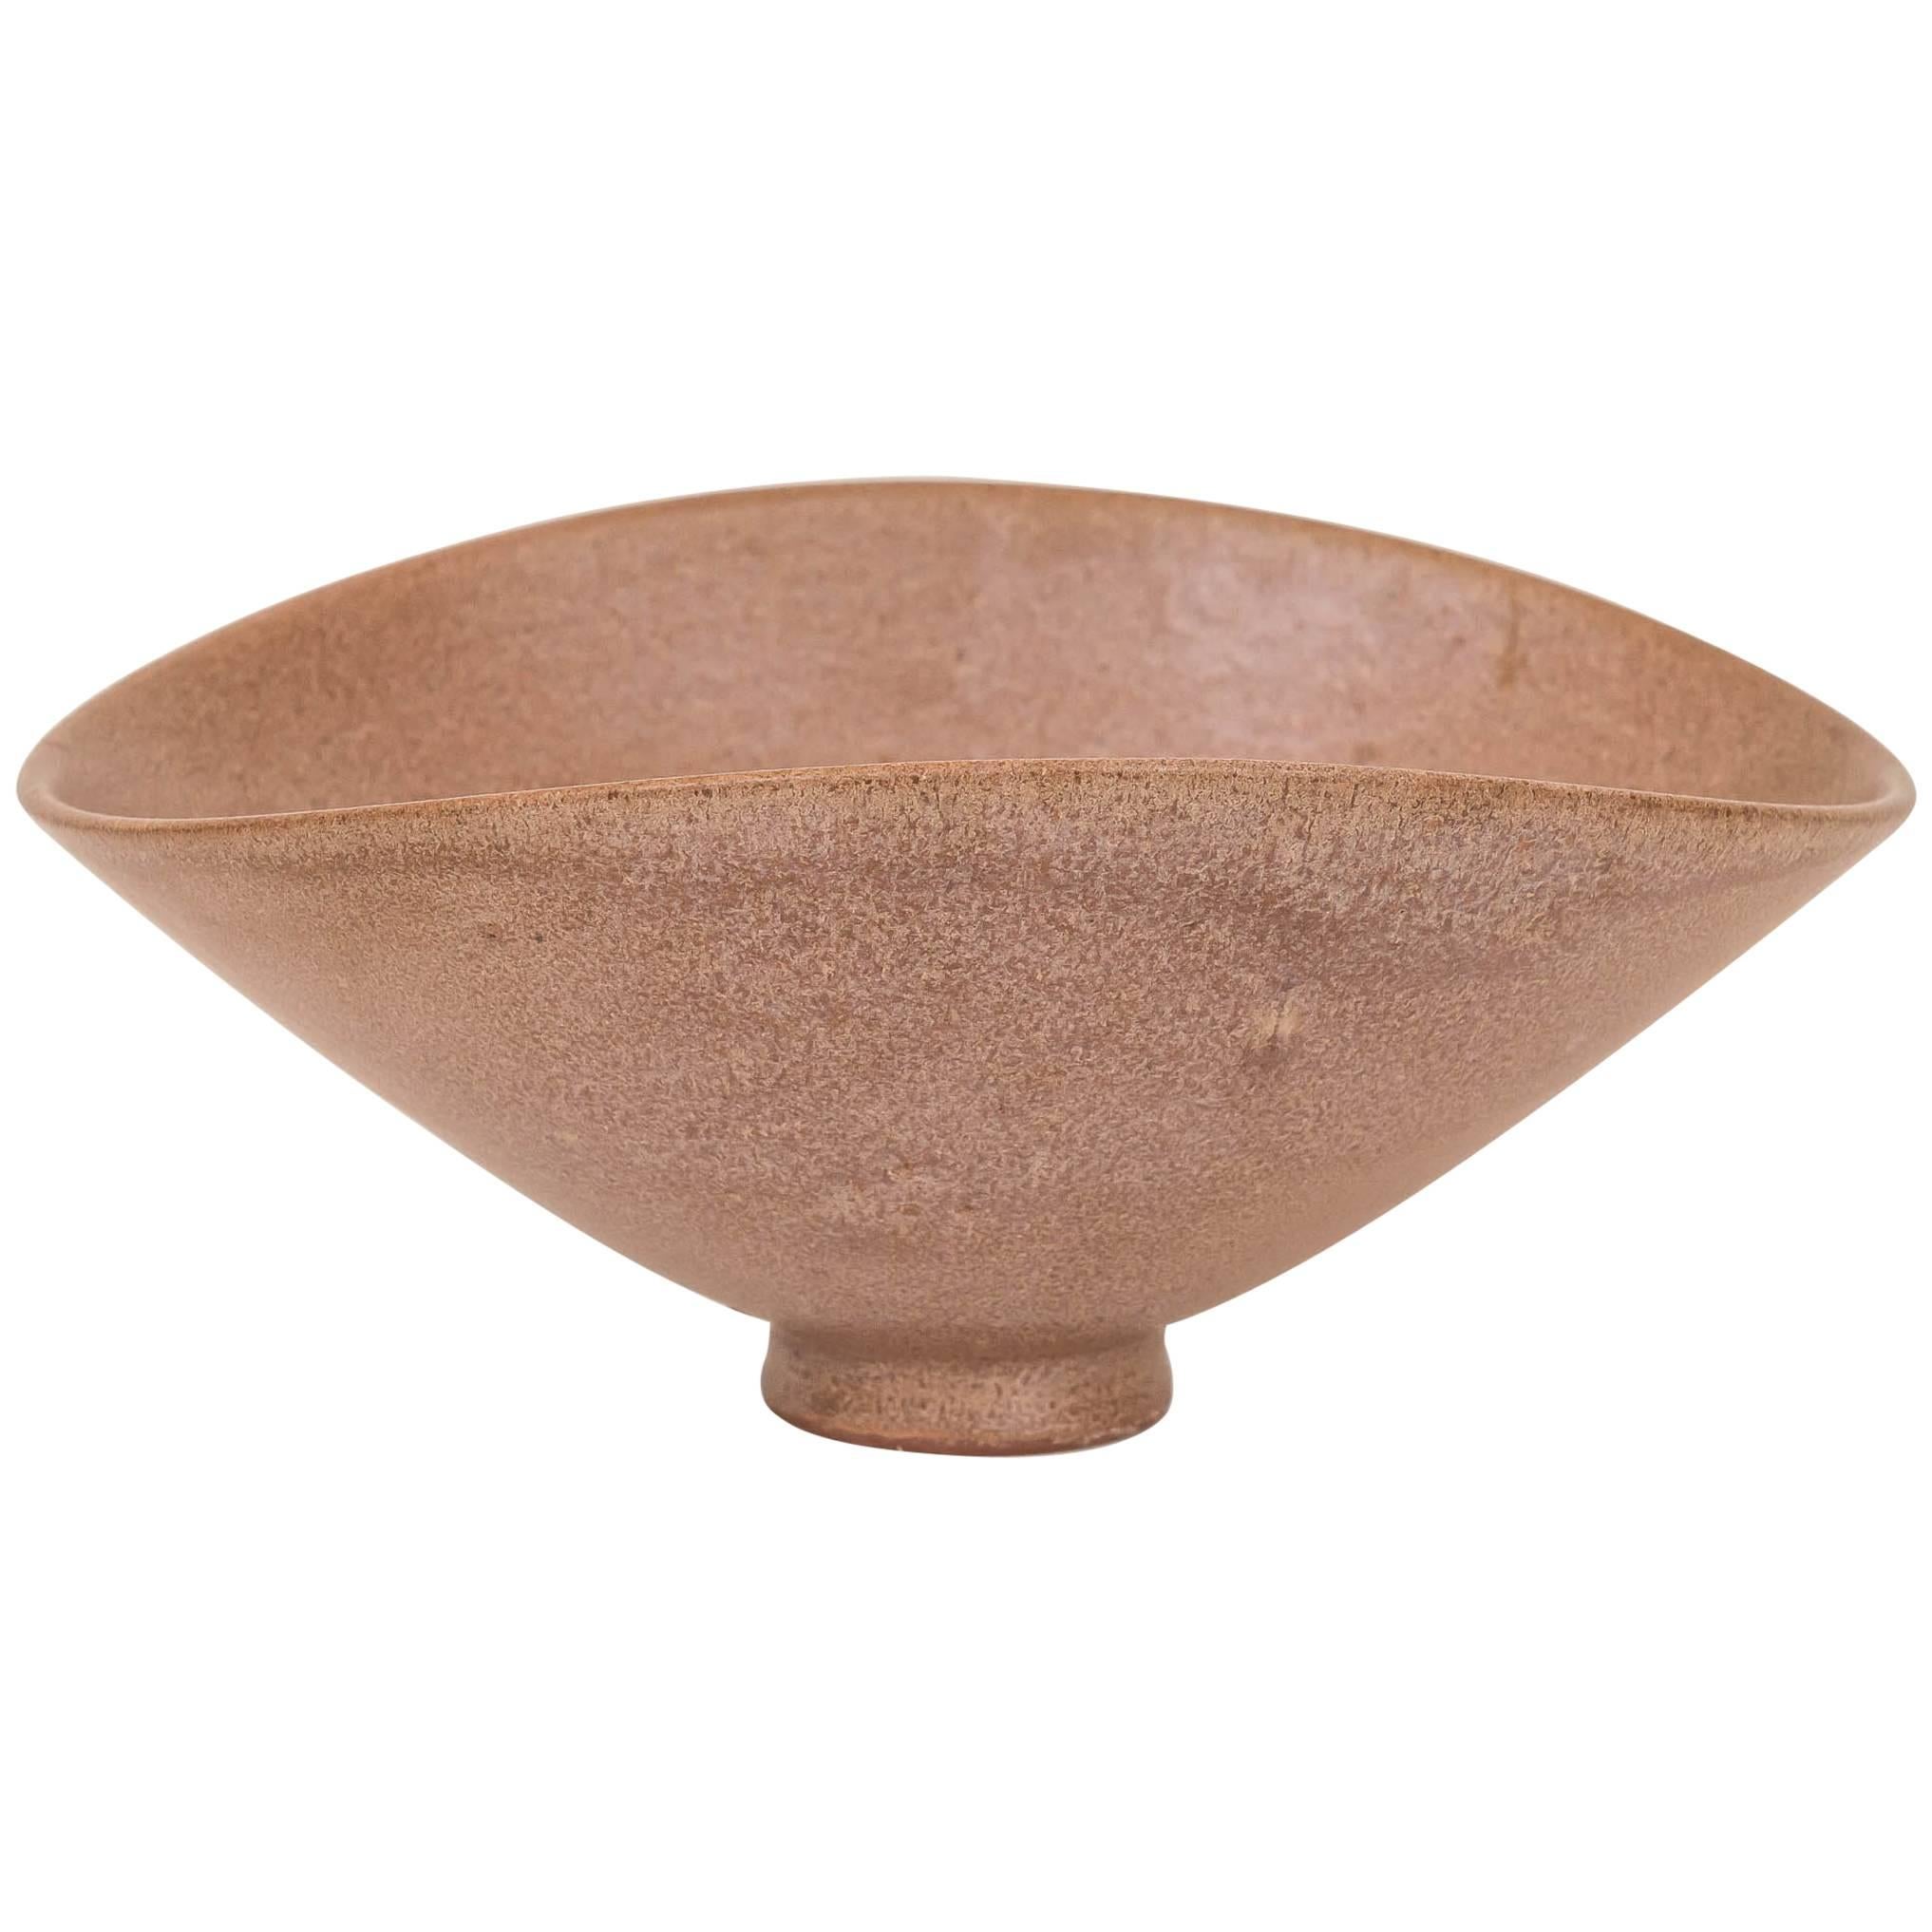 James Lovera Ceramic Bowl For Sale